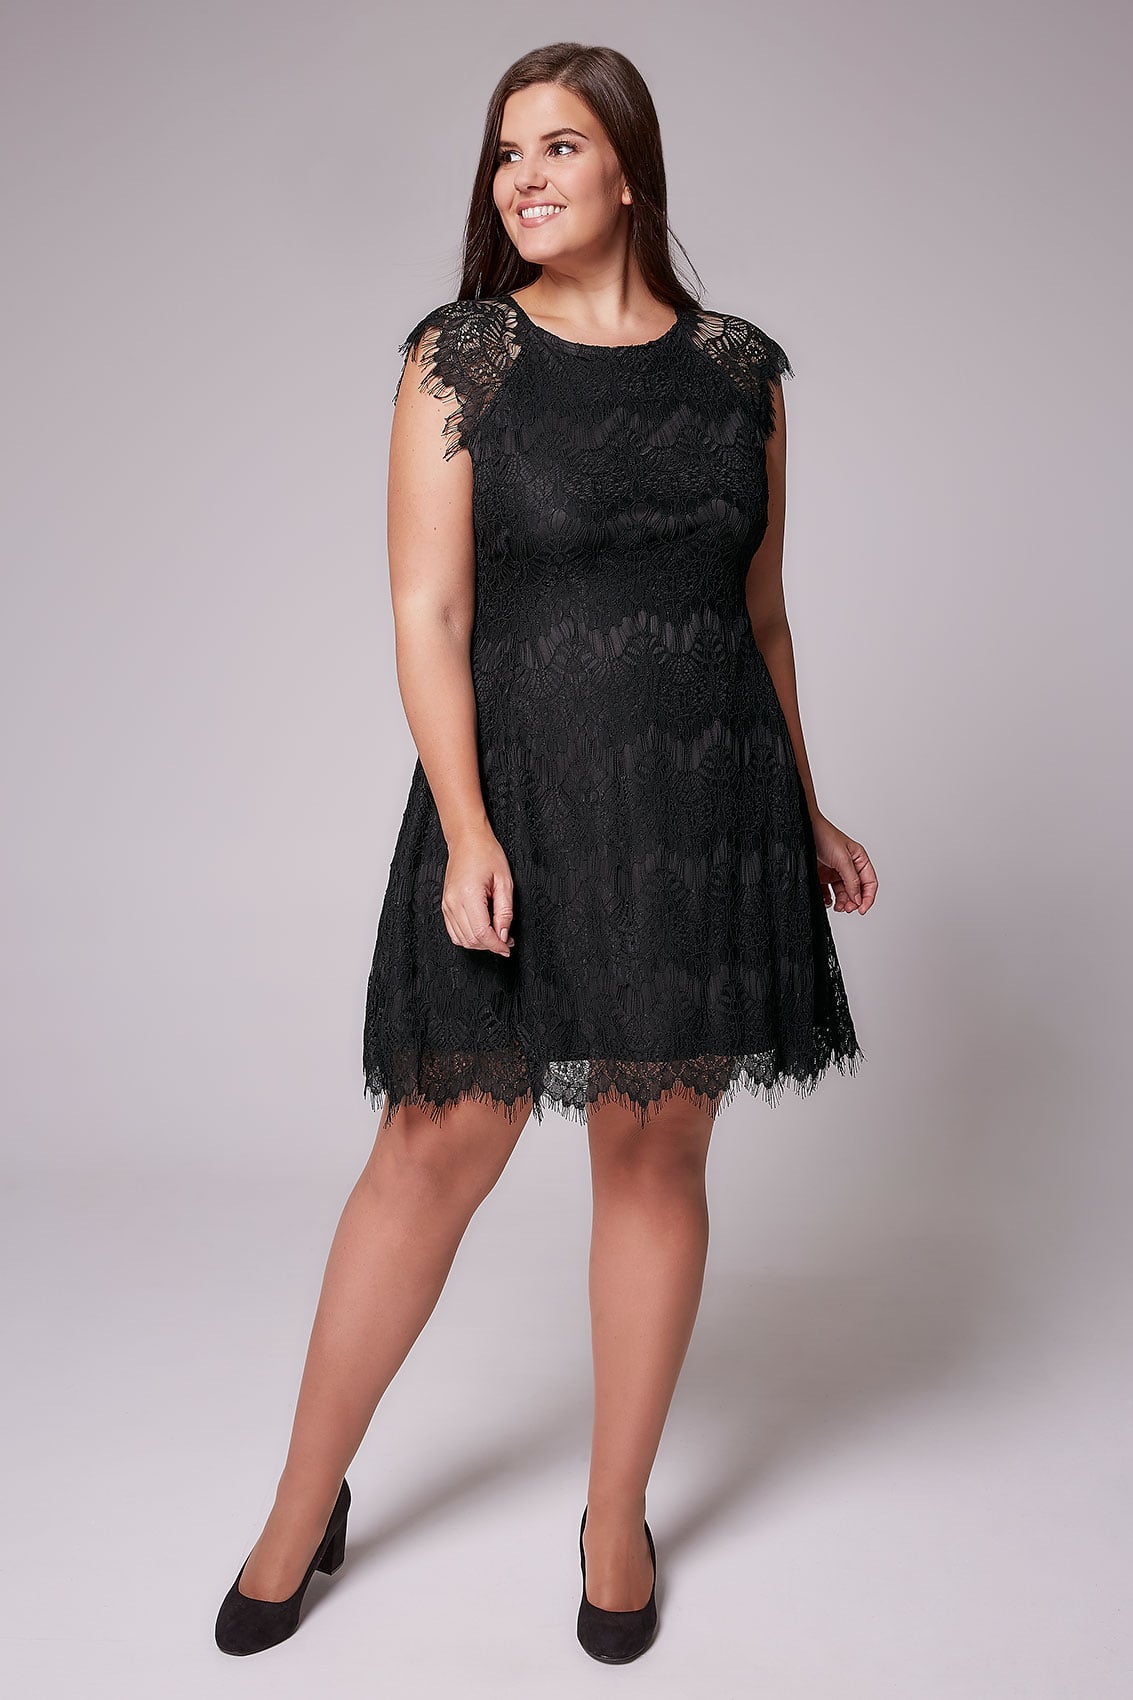 AX PARIS CURVE Black Eyelash Lace Dress, Plus size 18,20,22,24,26,28